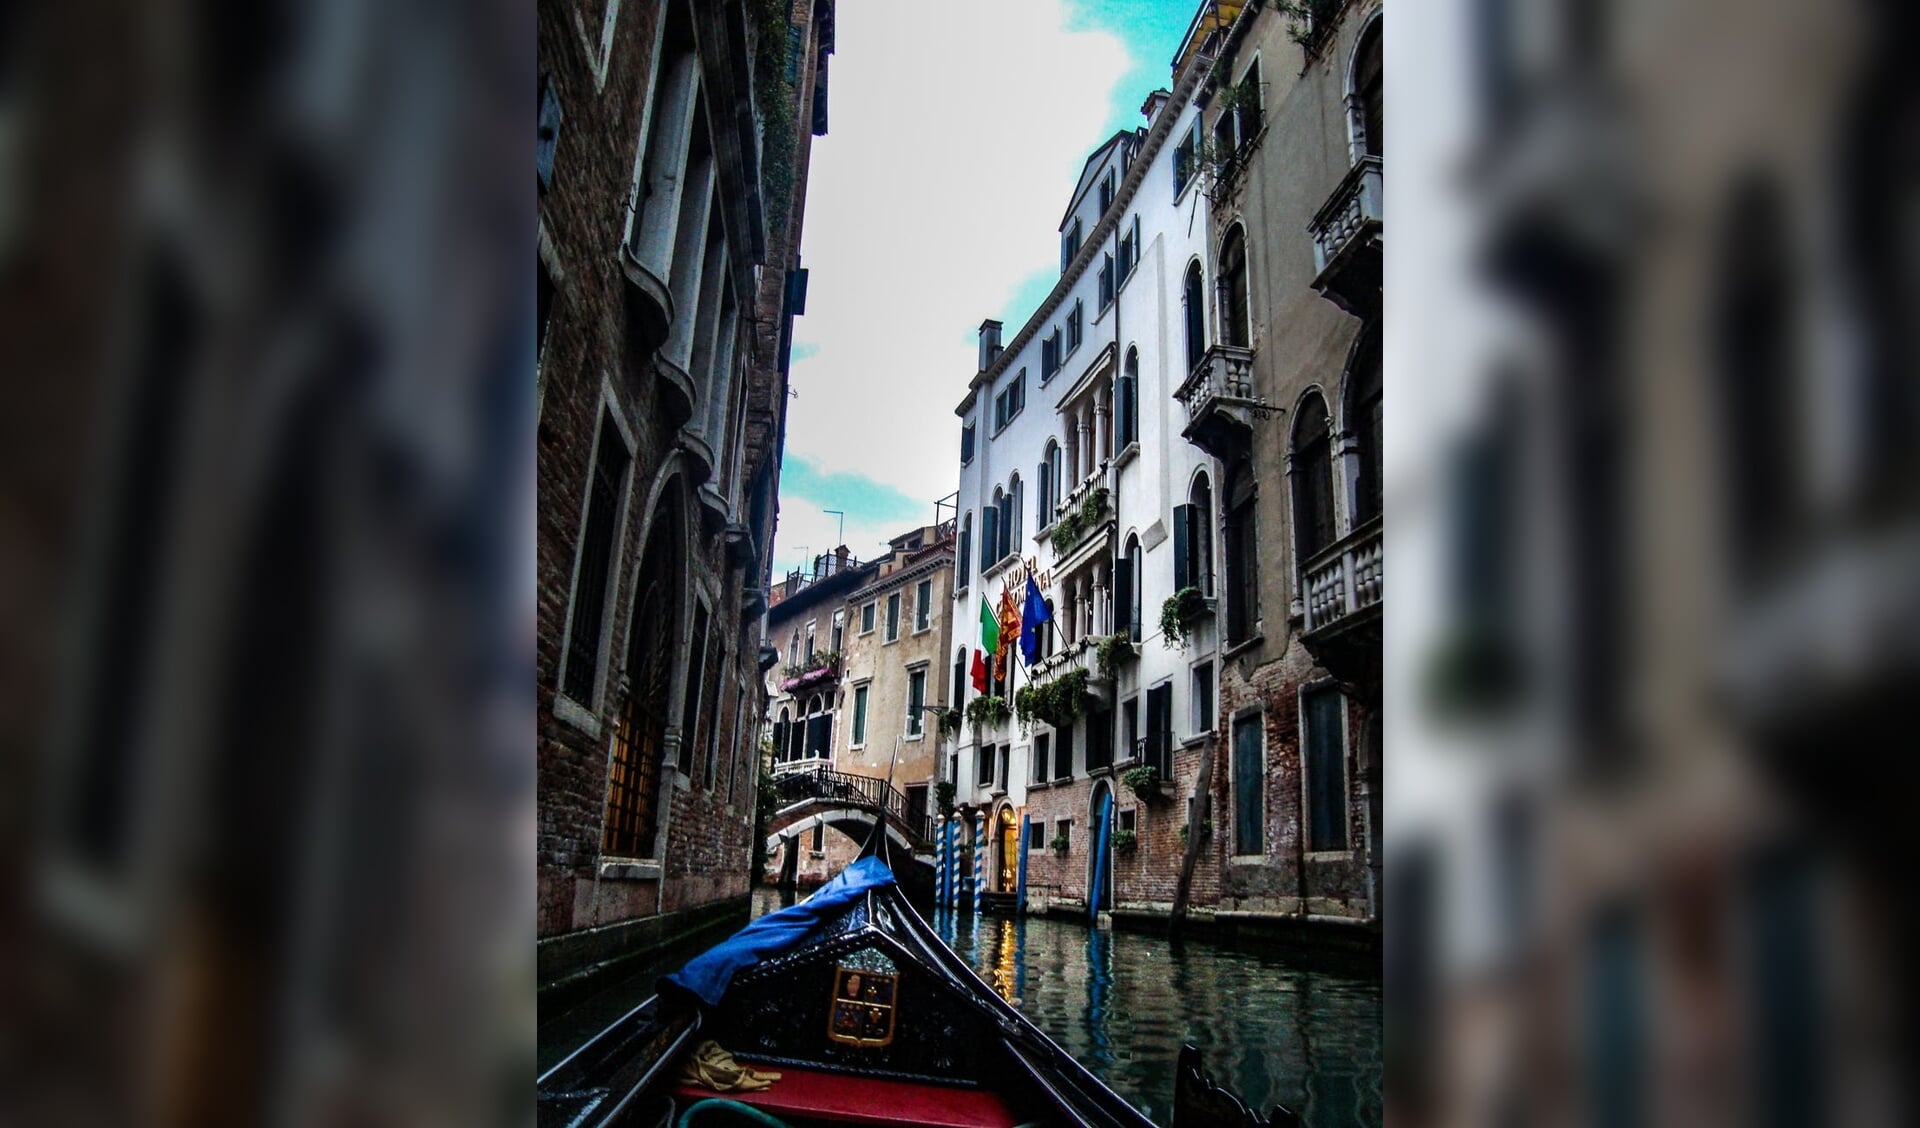 Het verhaal speelt in Venetië.